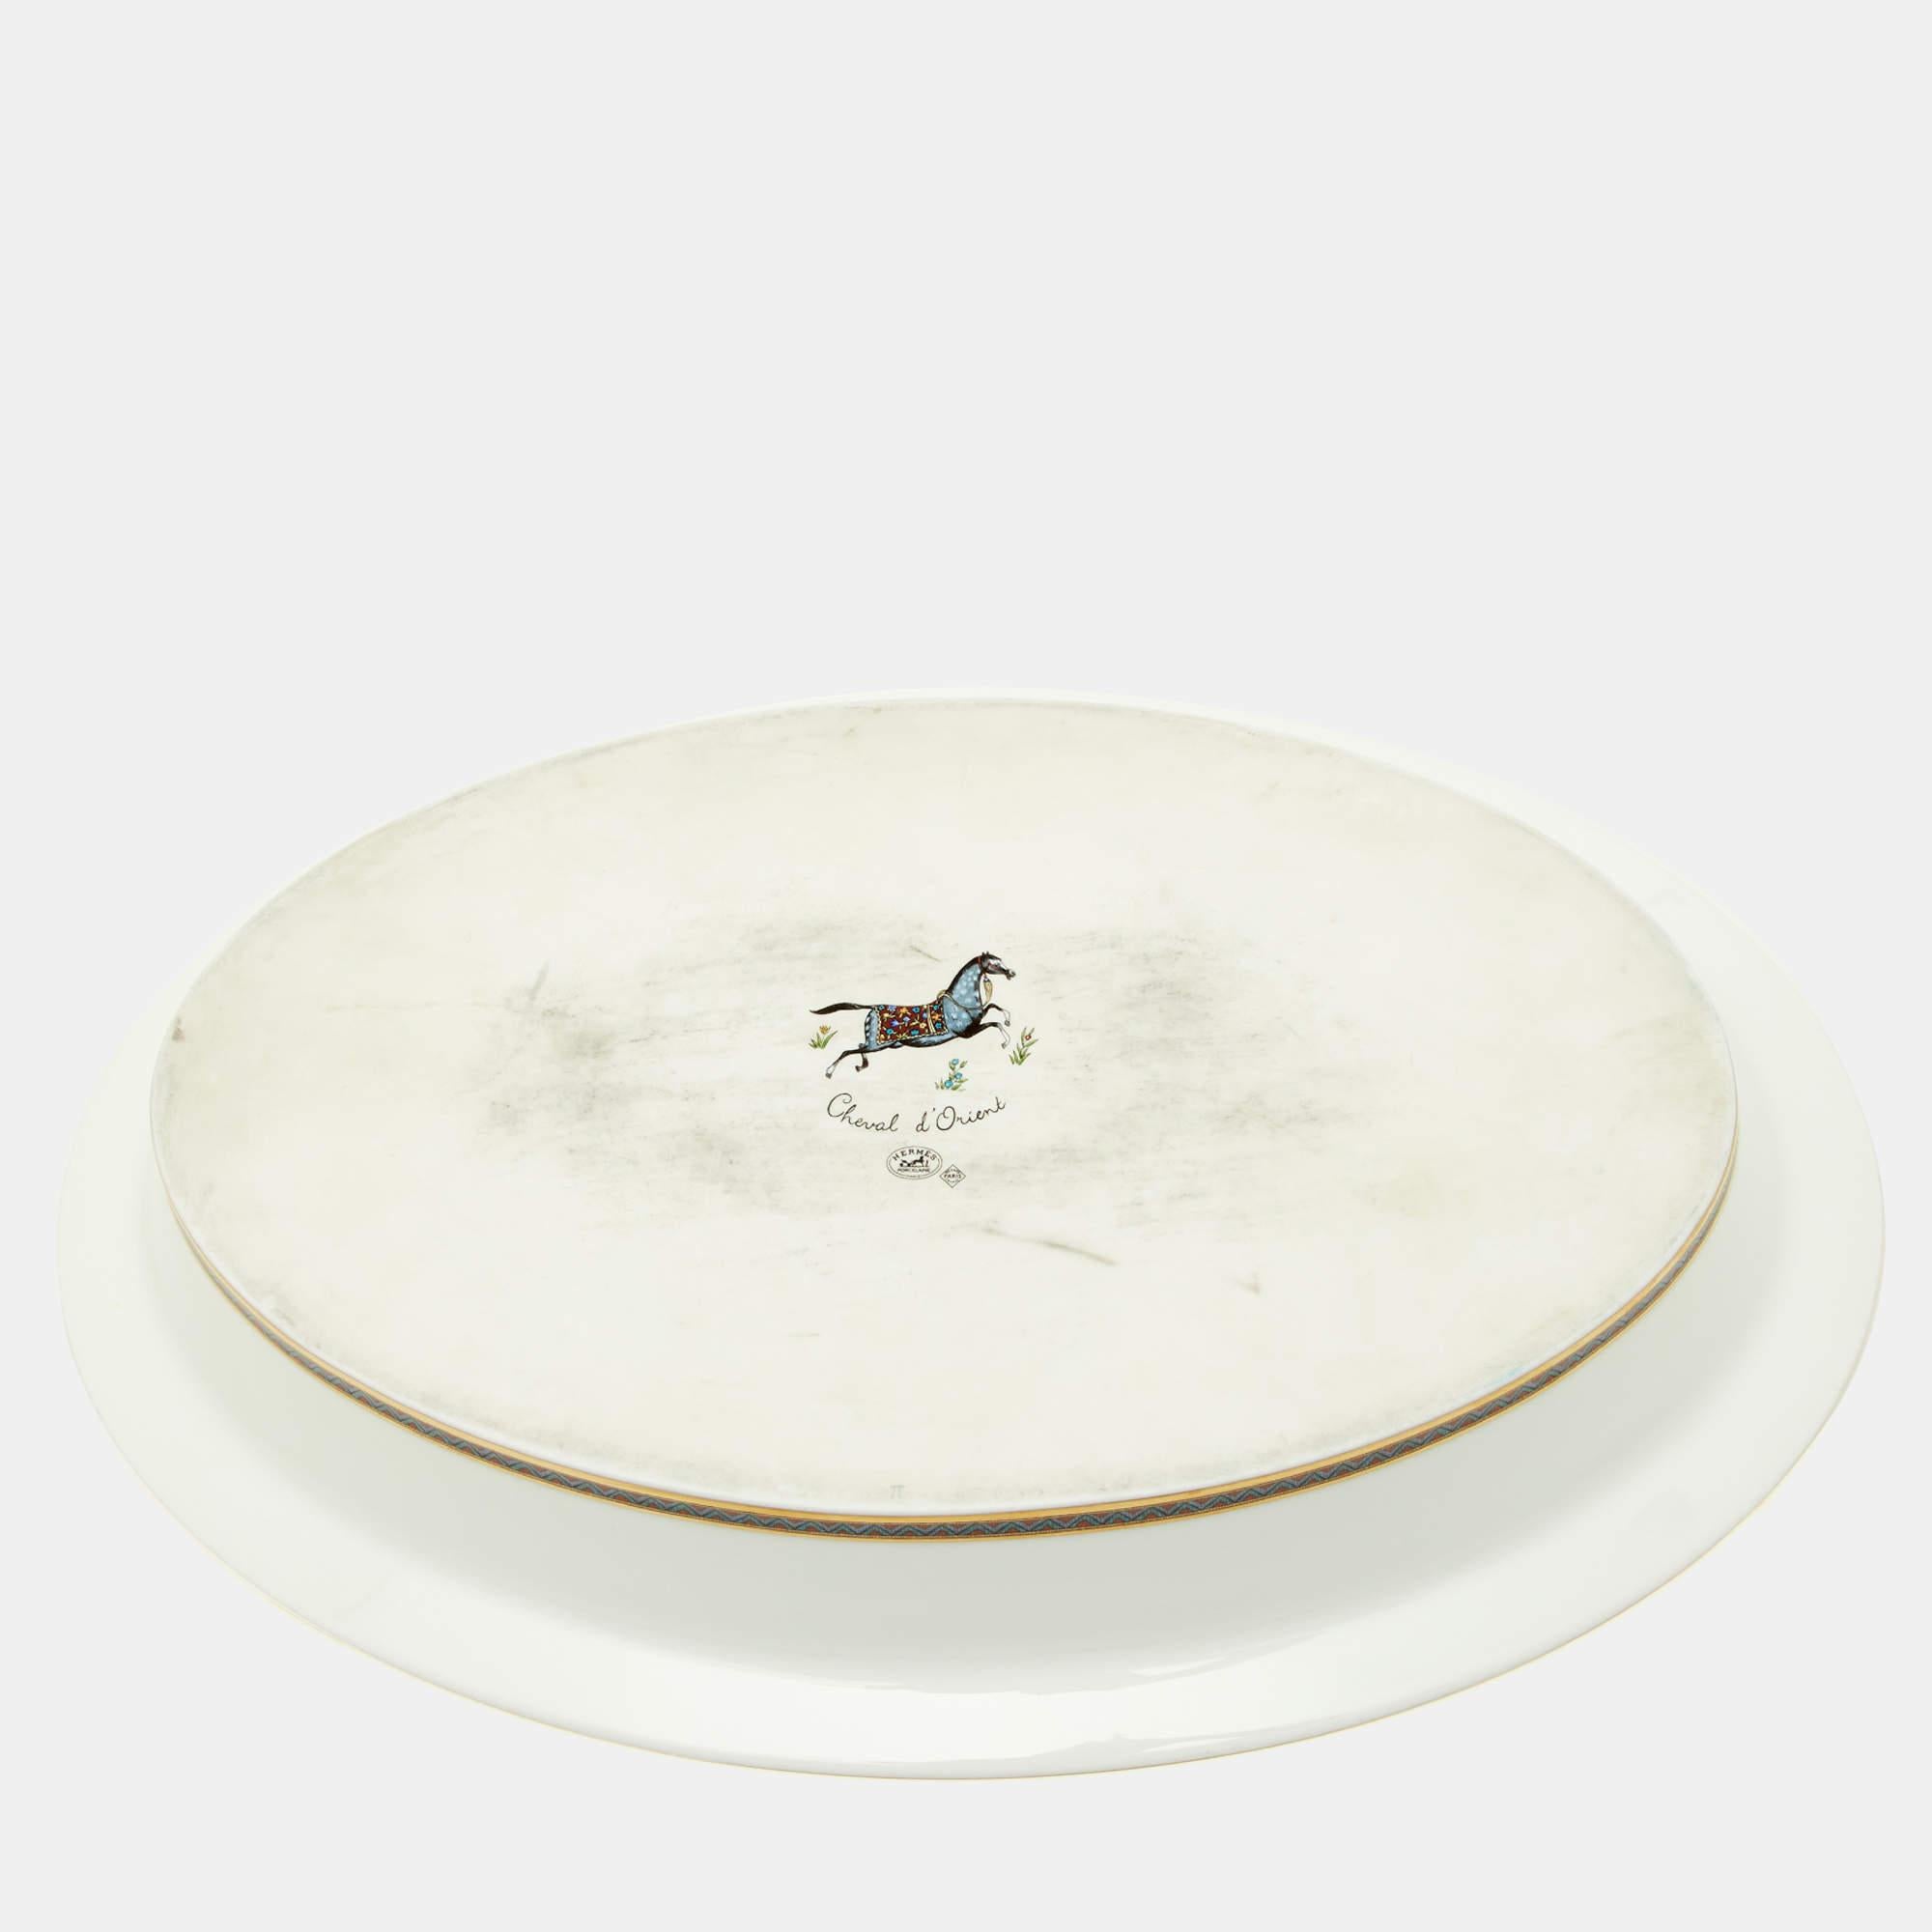 Le légumier Cheval d'Orient d'Hermès est une pièce d'art de la table d'une grande finesse. Fabriqué en porcelaine blanche fine, il présente un délicat motif imprimé inspiré des motifs orientaux. Avec son esthétique élégante et intemporelle, ce plat